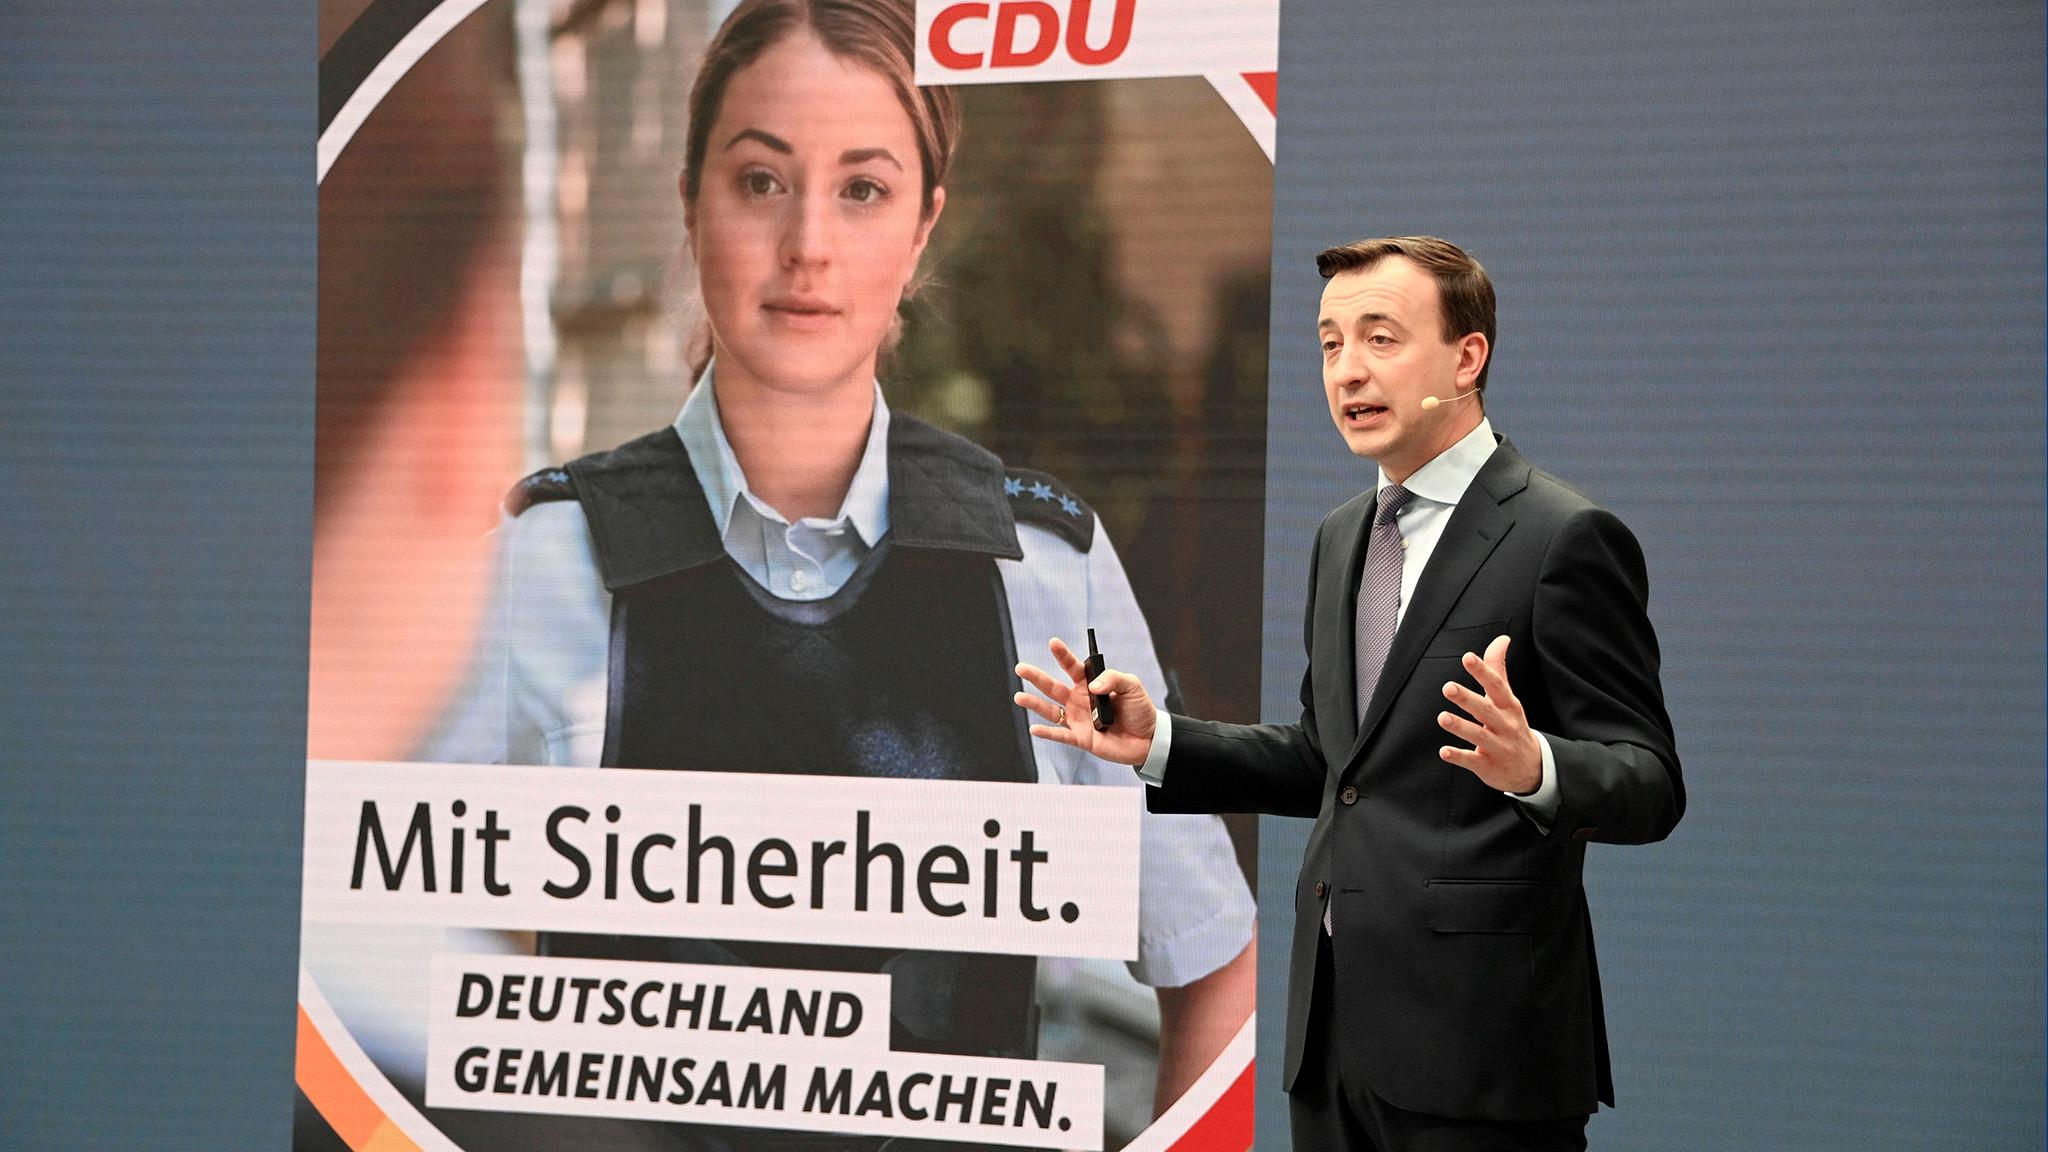 Keine Polizistin. Hier wirbt Clara von Nathusius, stellvertretende Chefin eines CDU-Wahlkampfteams, in der Rolle der Polizistin für Sicherheit. Vorgestellt wurde die Wahlkampfkampagne  von CDU-Generalsekretär Paul Ziemiak. 